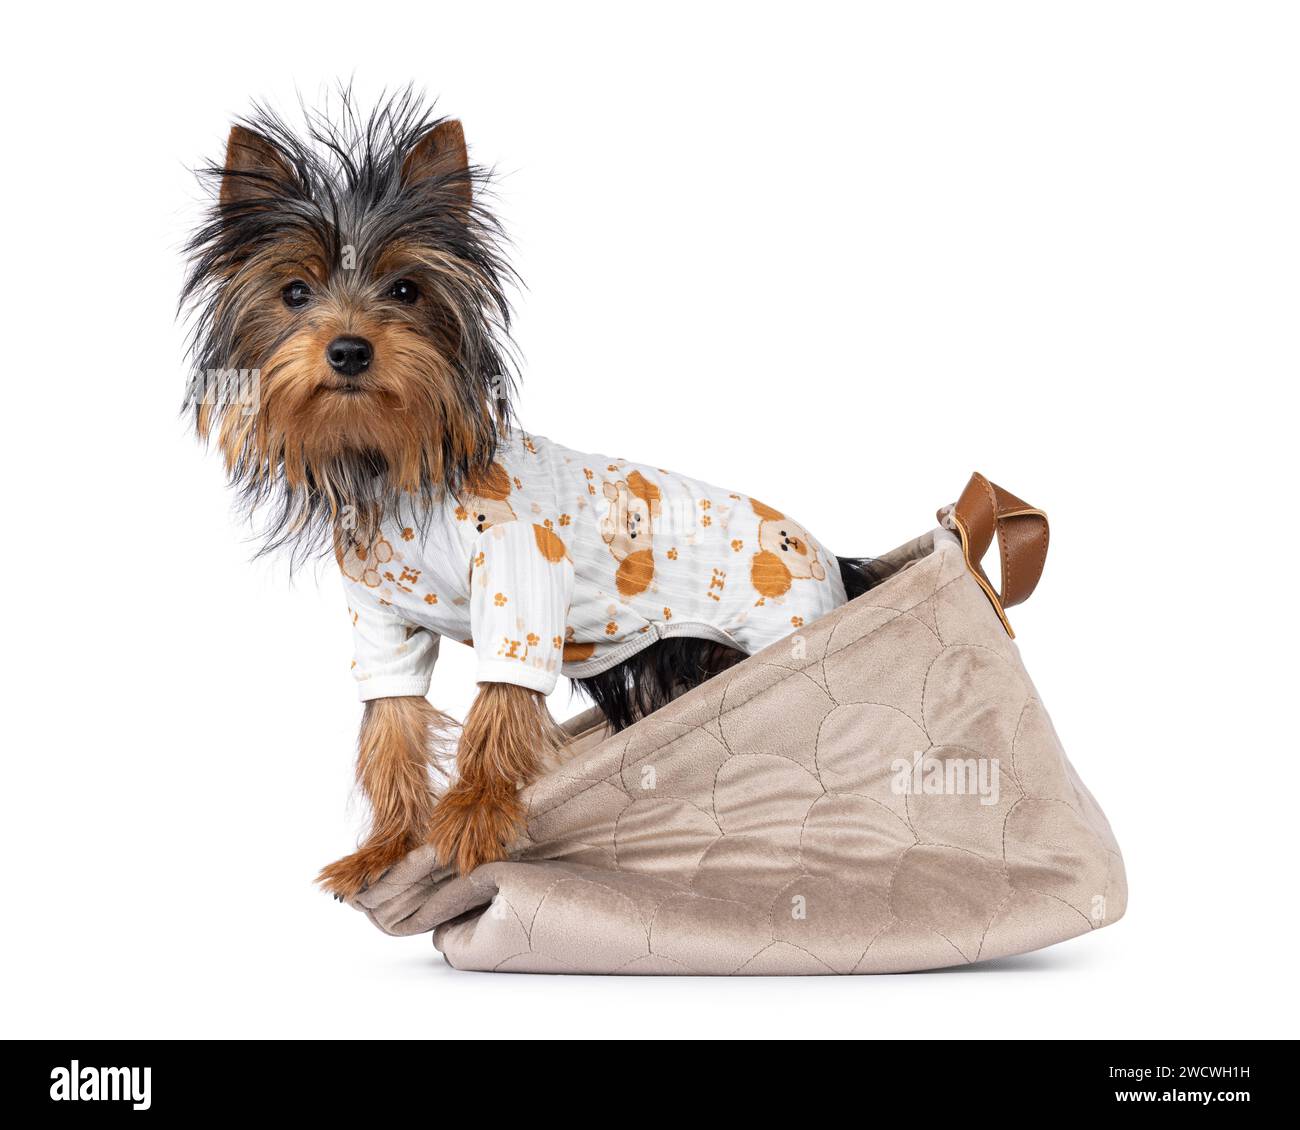 Mignon petit chien noir et tan Yorkshire Terrier chiot, debout sur le côté dans le panier portant un pyjama. Regarder vers la caméra. Isolé sur un backgr blanc Banque D'Images